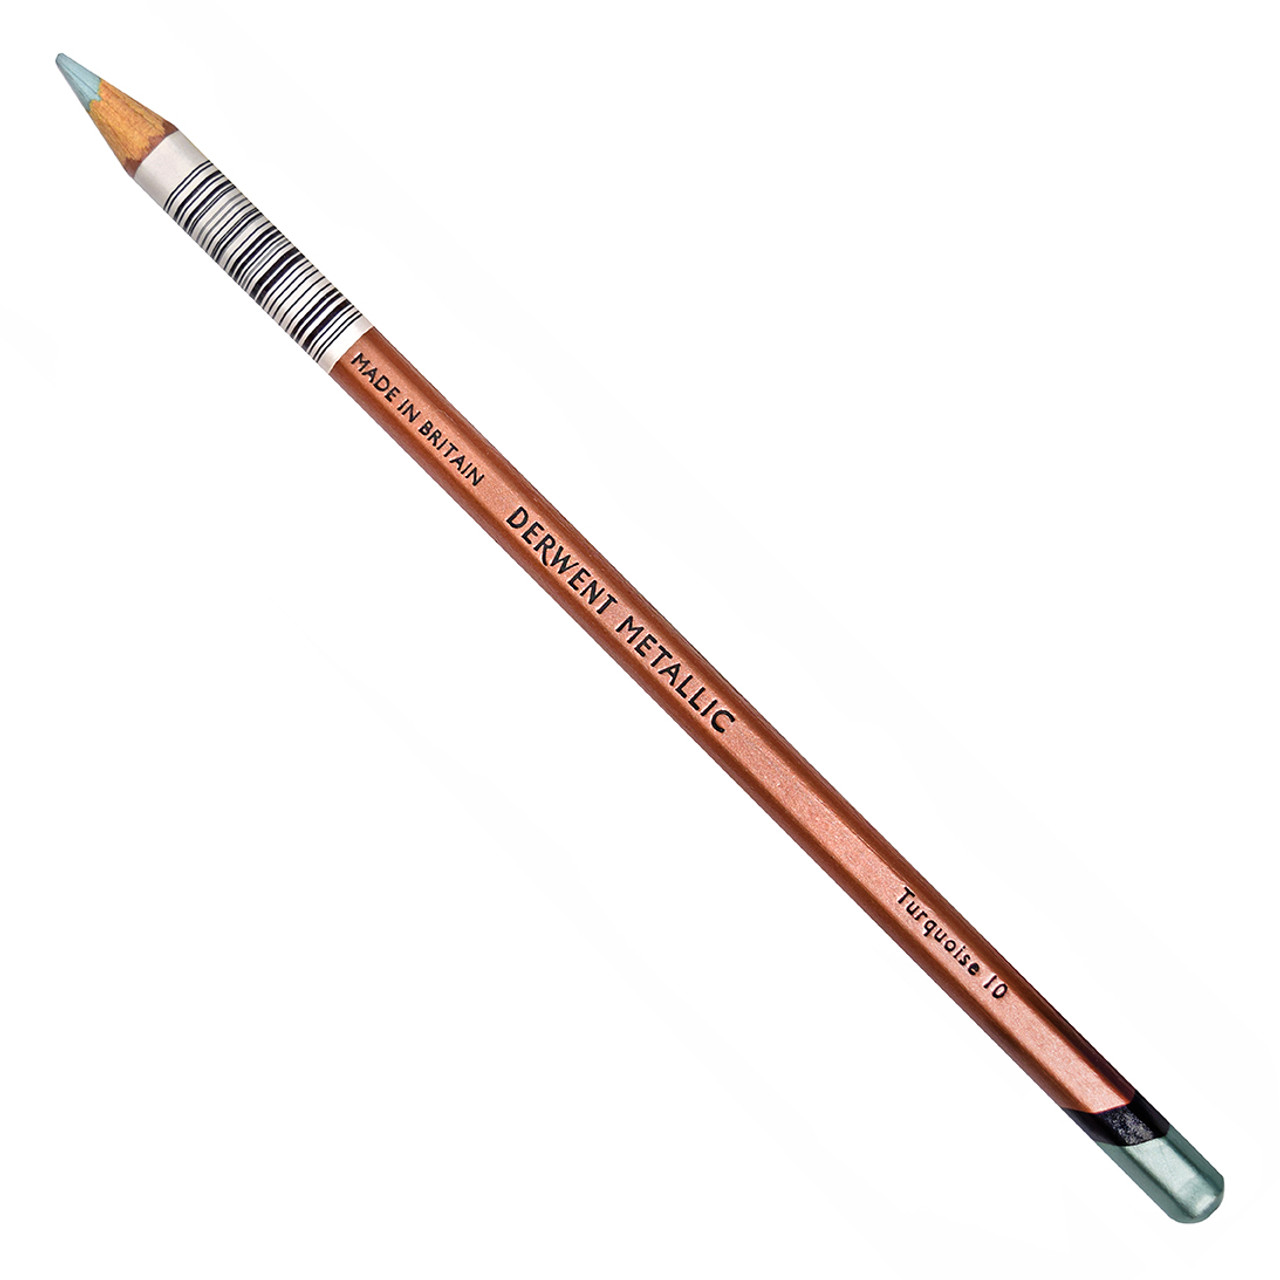 Derwent Pencils